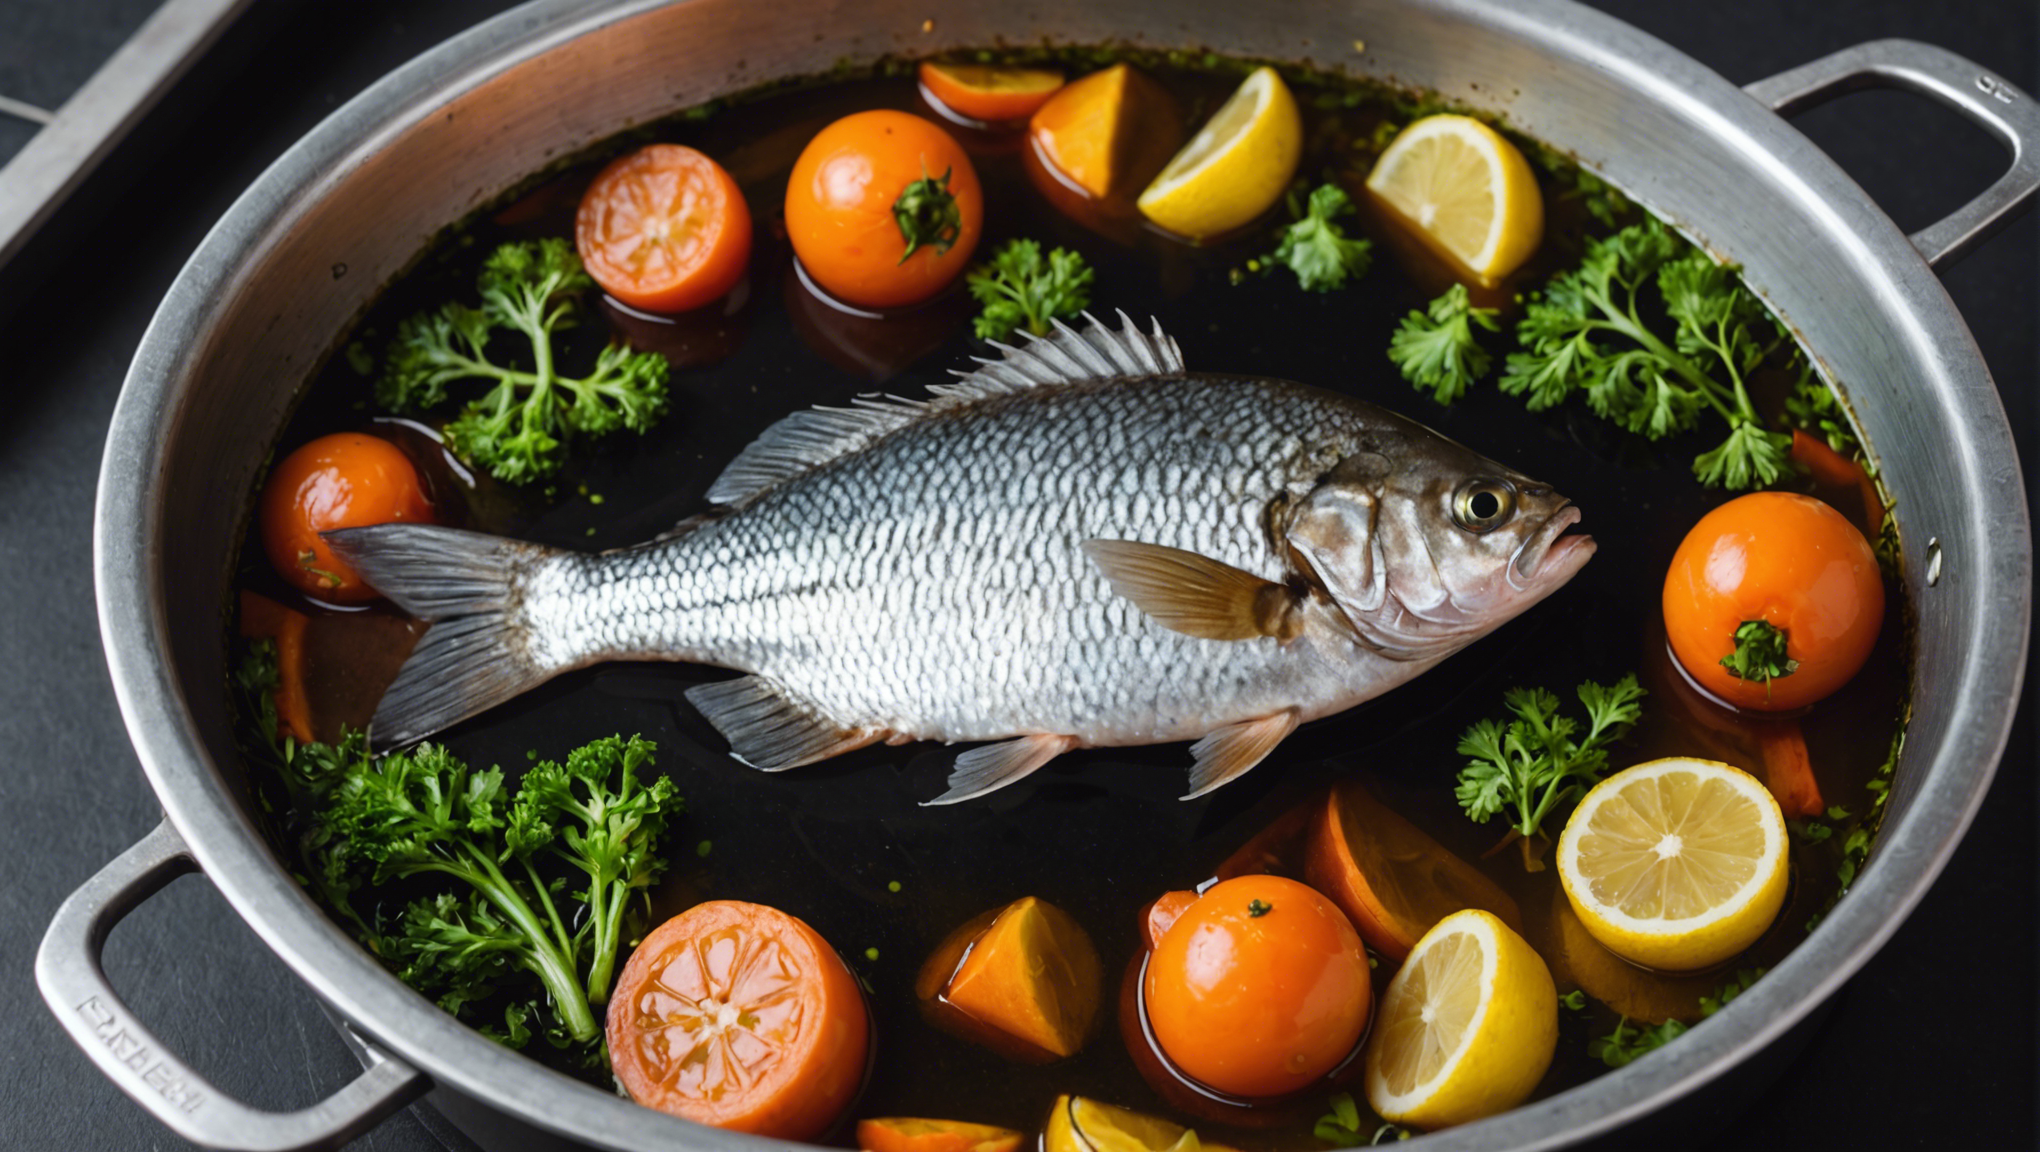 découvrez le temps de cuisson idéal pour un délicieux poisson au court bouillon et appréciez toute sa saveur et sa tendreté.